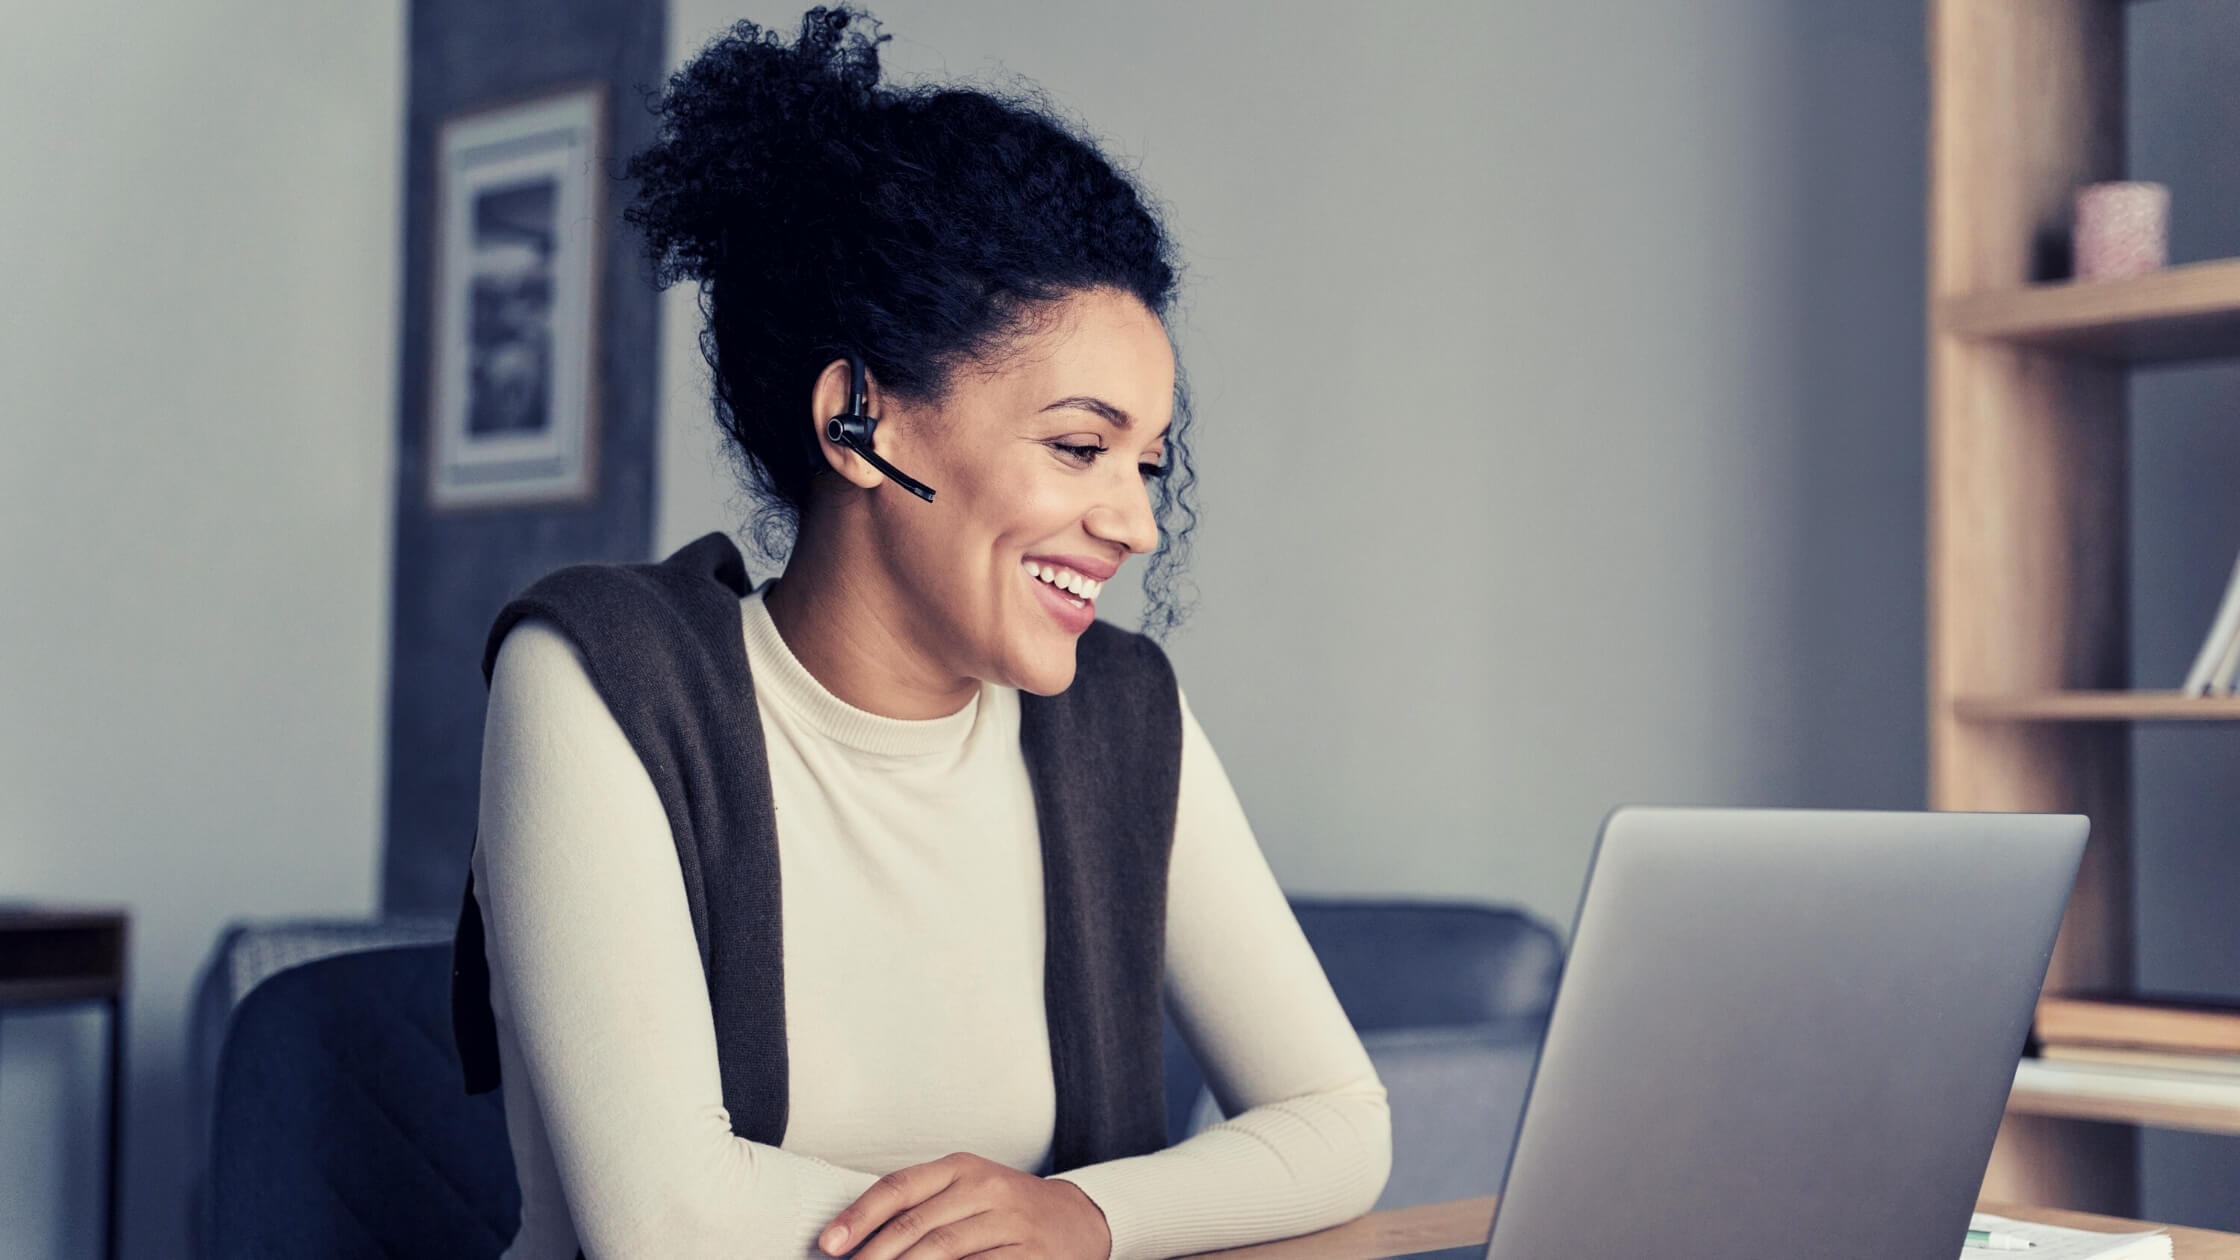 Mujer con el cabello recogido y un dispositivo de manos libres, de unos 40 años, sonriendo mientras mira la pantalla de su laptop